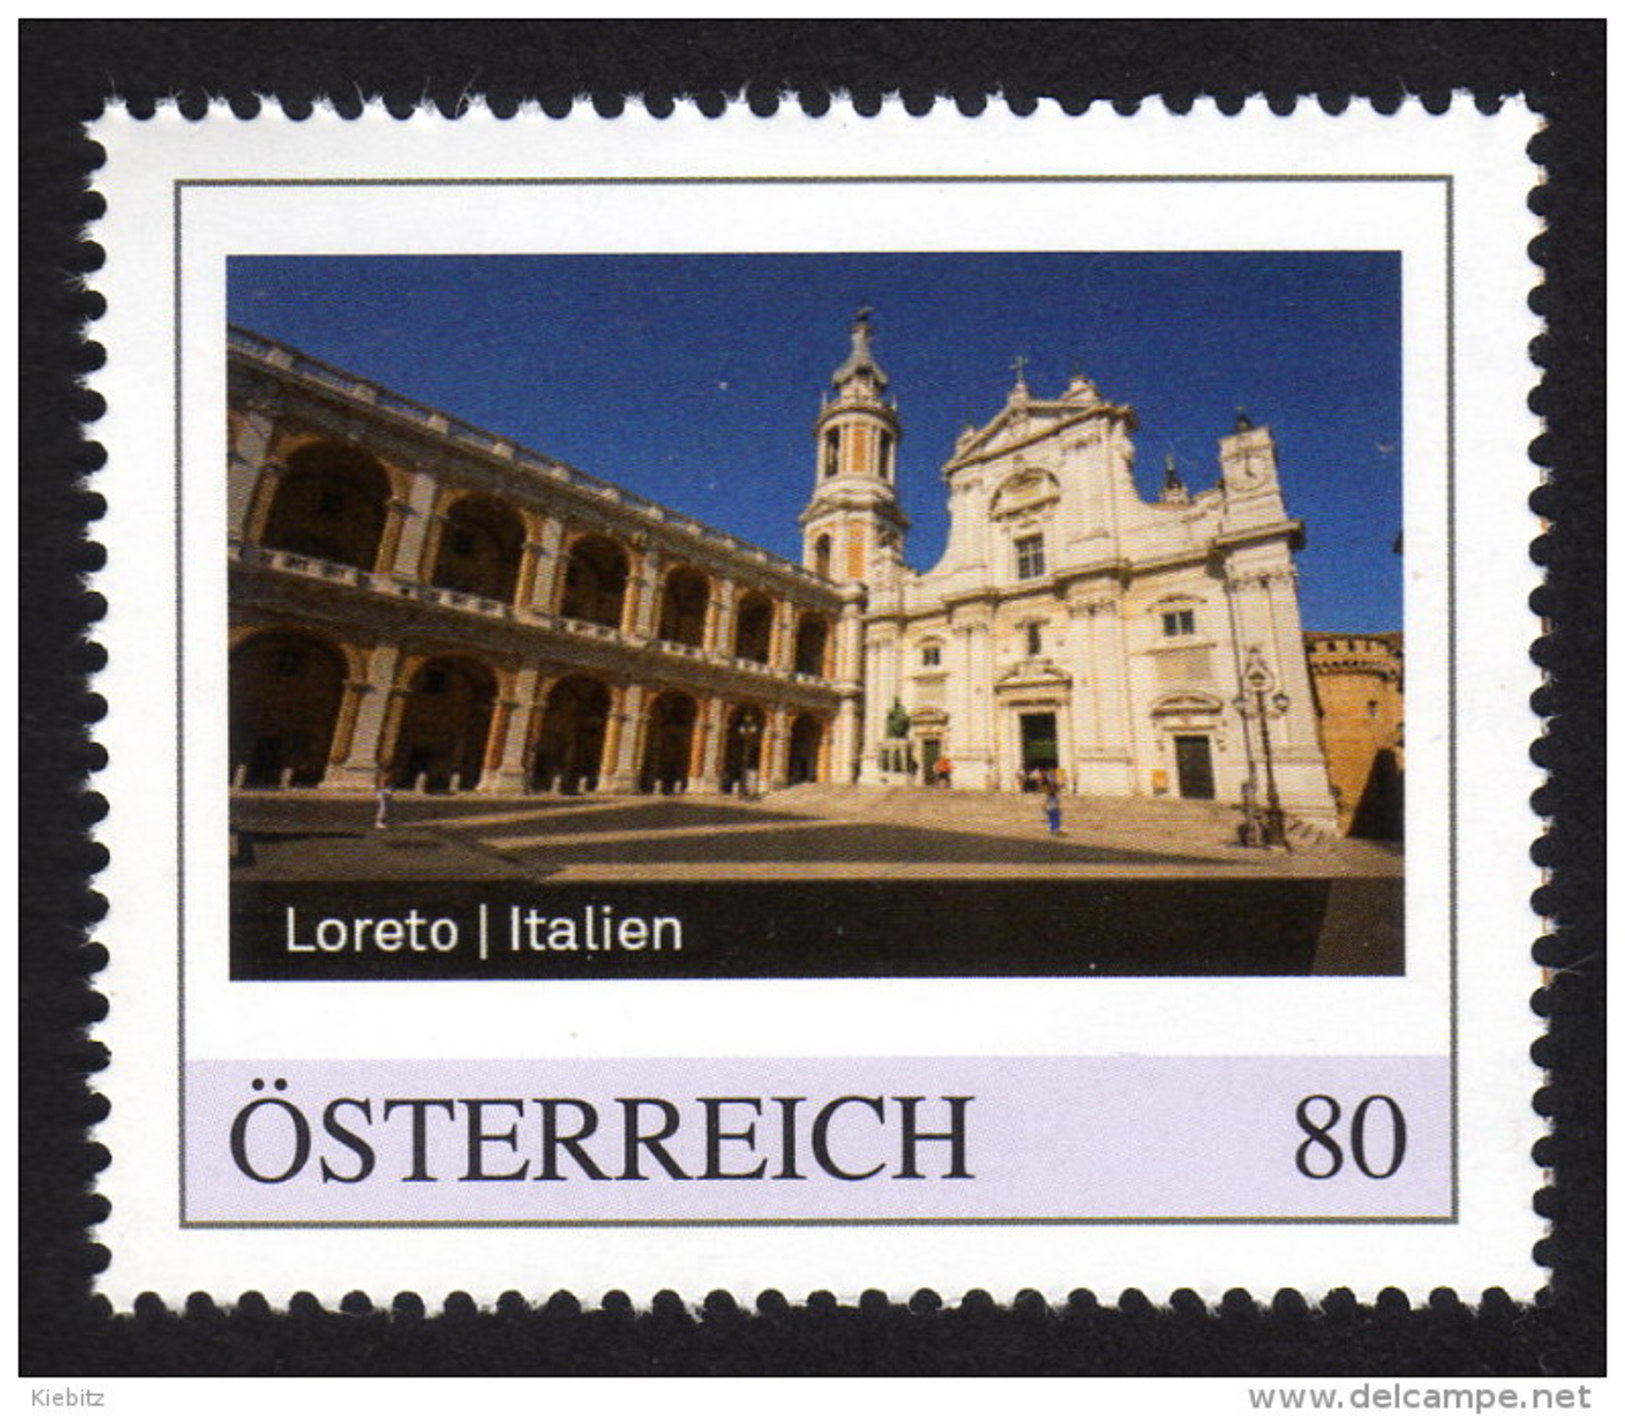 ÖSTERREICH 2015 ** Wallfahrtsort Loreto In Italien - PM Personalized Stamp MNH - Christentum